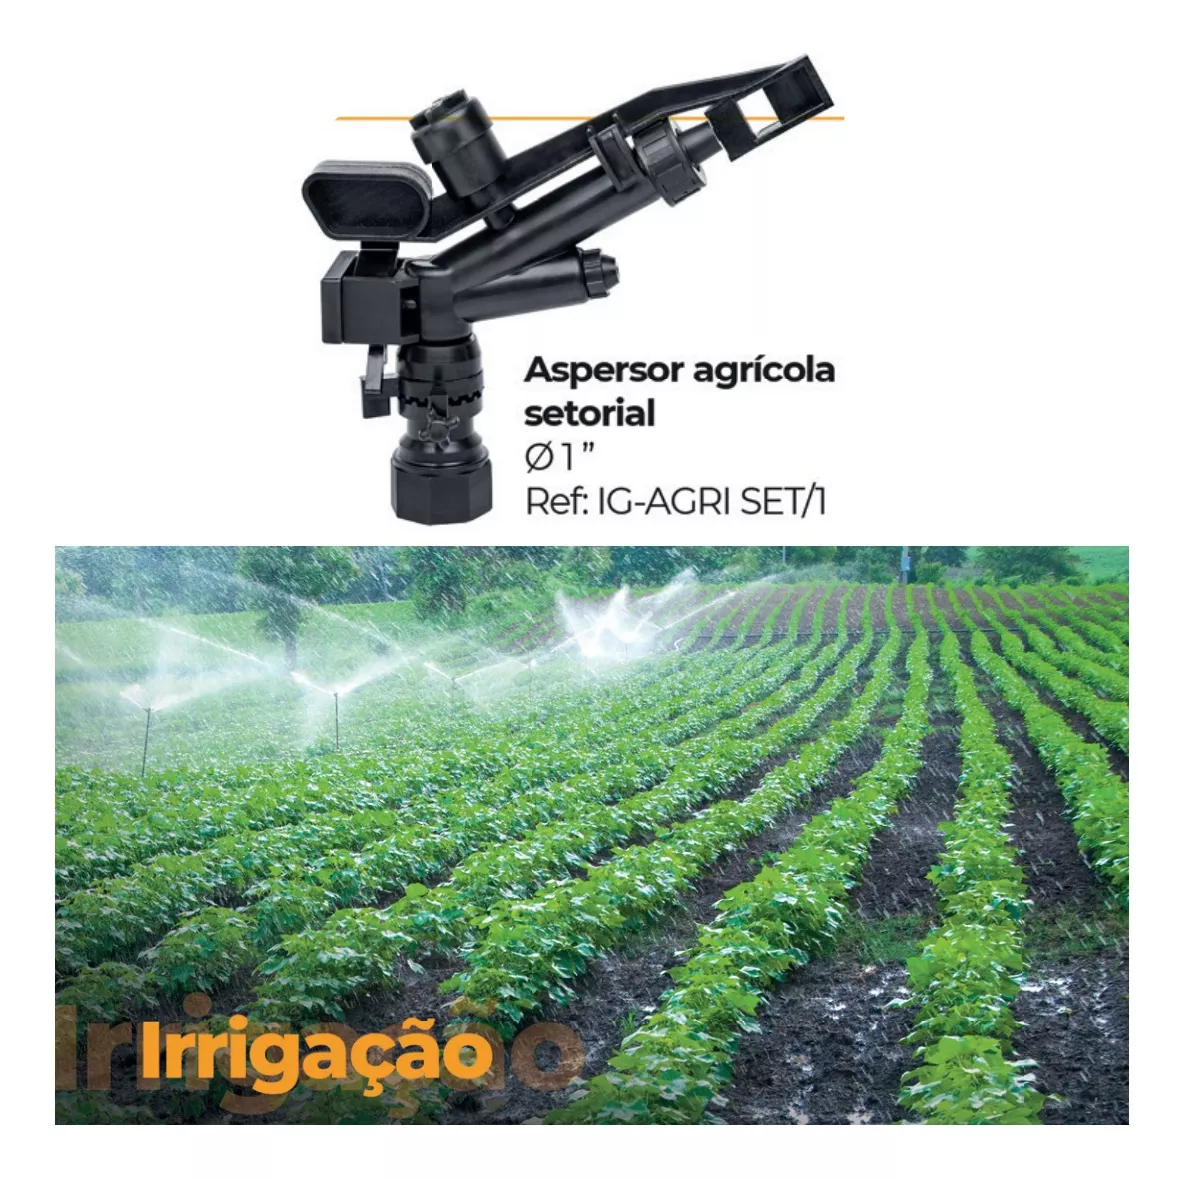 Primeira imagem para pesquisa de canhao de irrigacao